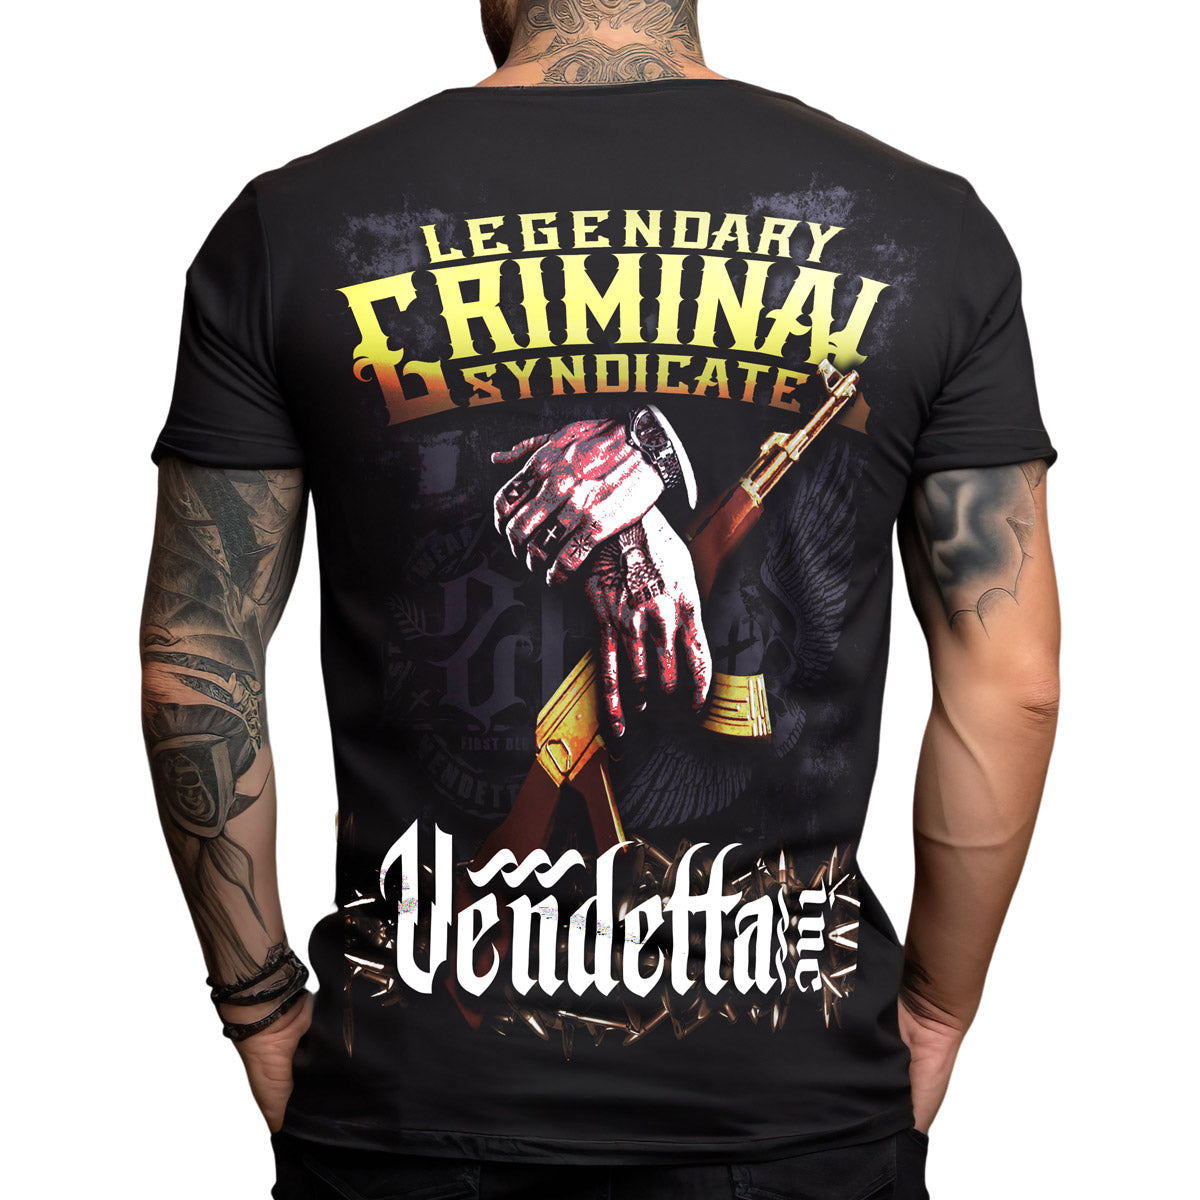 Vendetta Inc. Men's Shirt Legendary black VD-1234